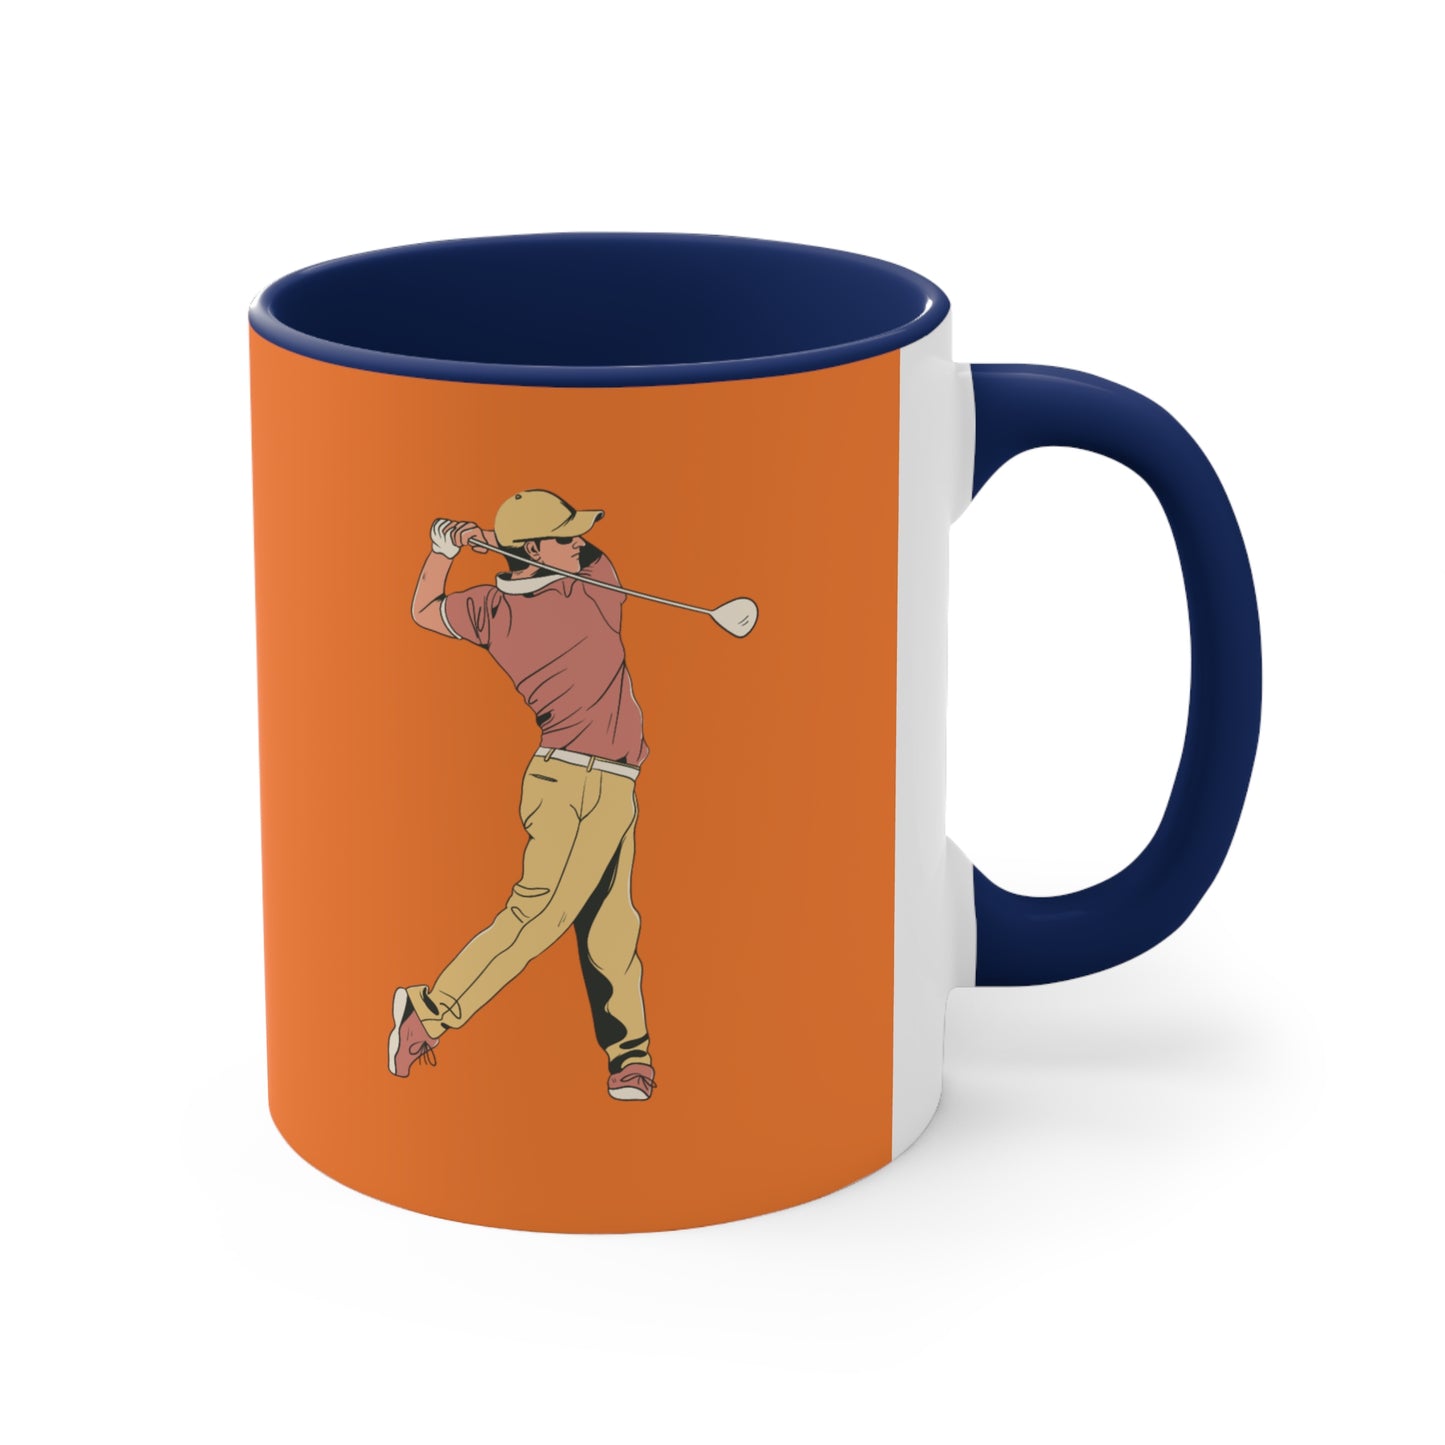 Accent Coffee Mug, 11oz: Golf Crusta